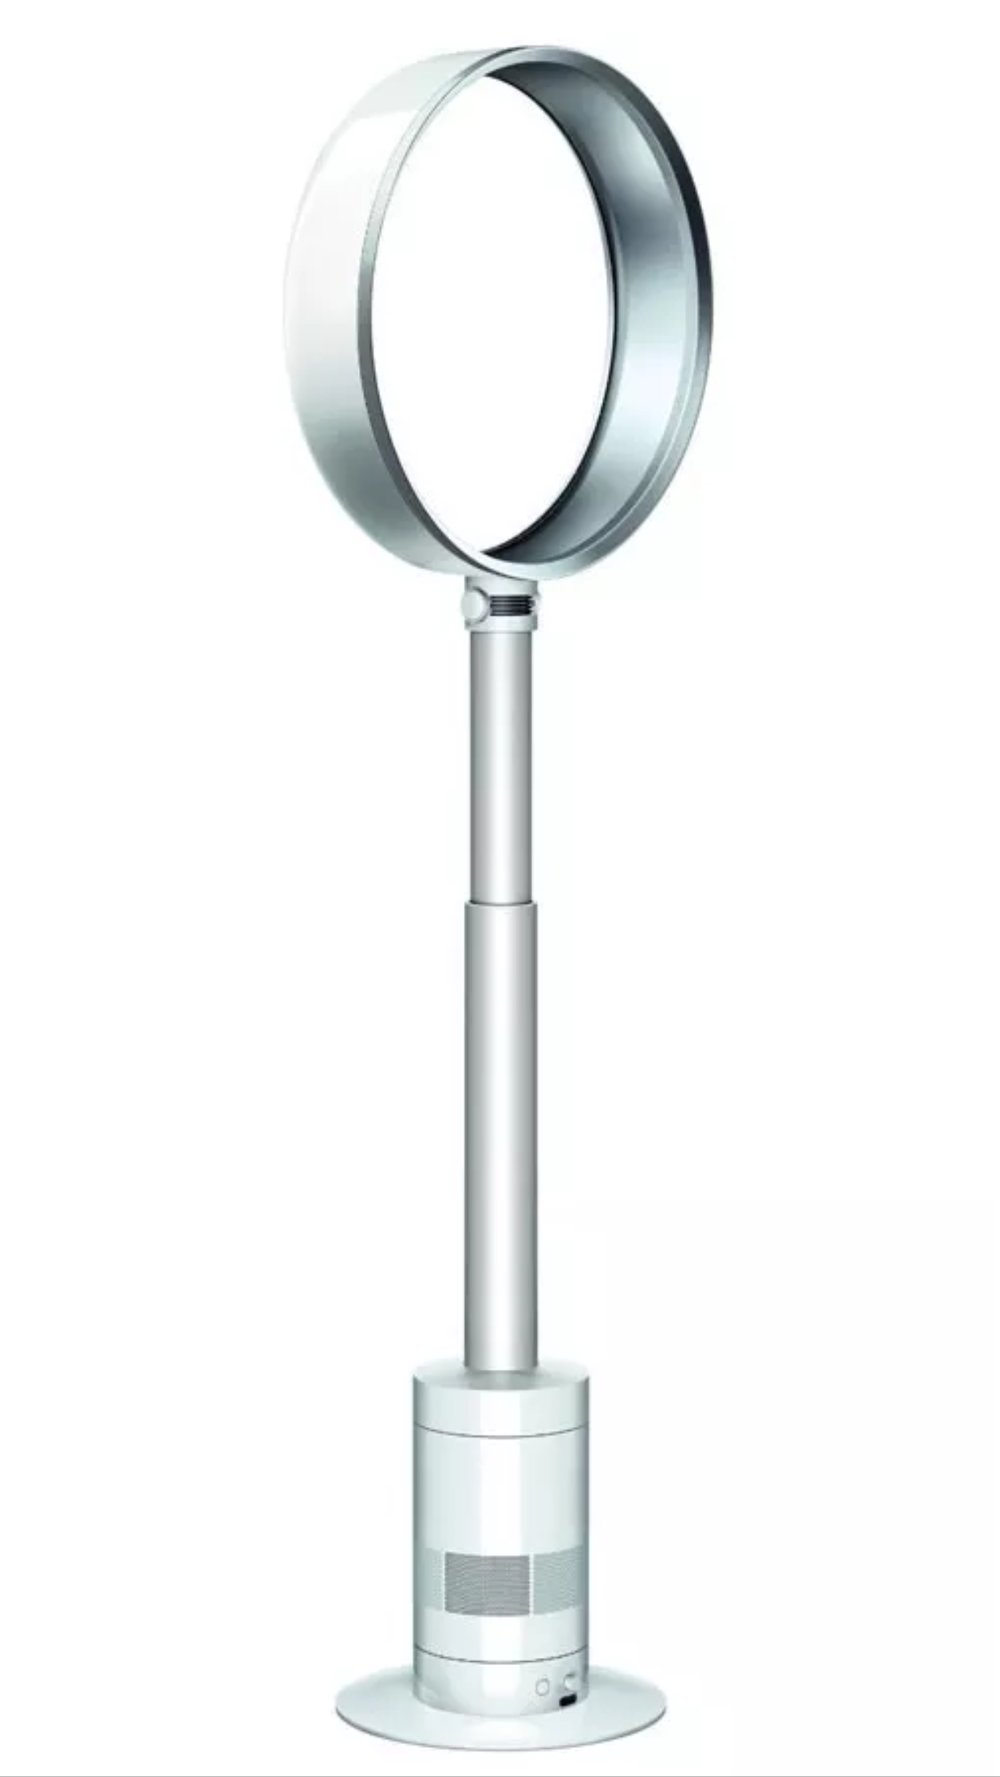 Image of Dyson Cool AM08 pedestal fan white